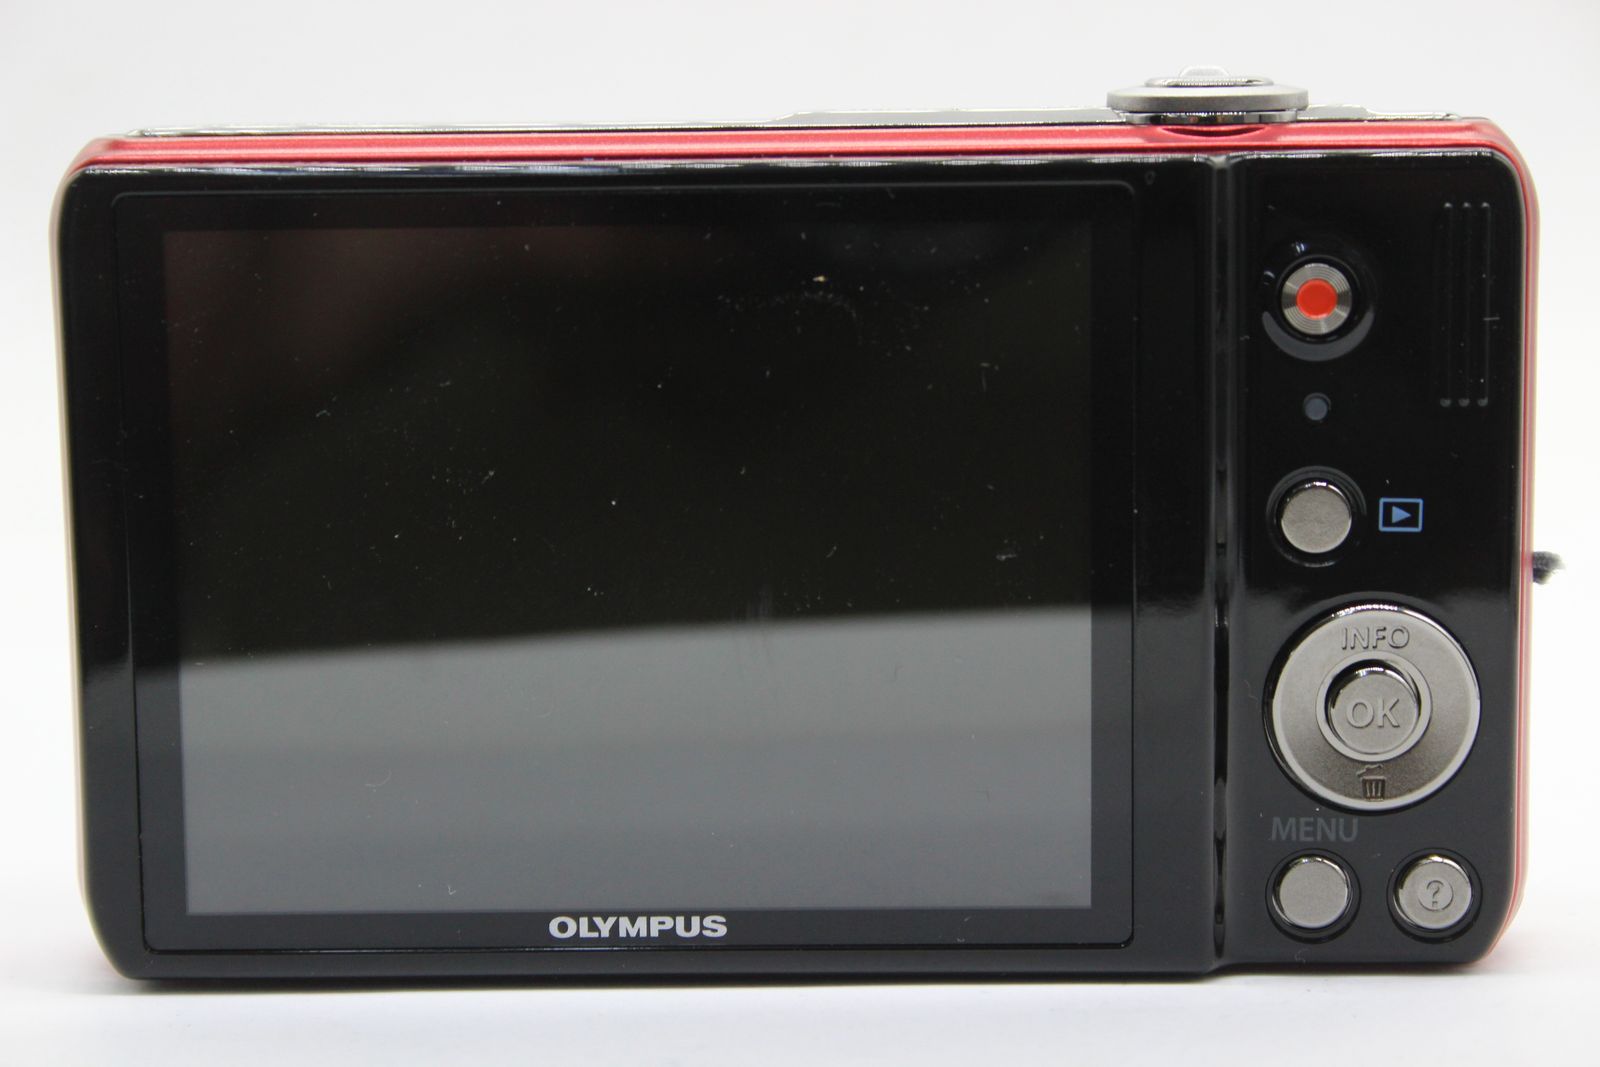 【美品 返品保証】 オリンパス Olympus VR-320 レッド 12.5x バッテリー付き コンパクトデジタルカメラ  s4873